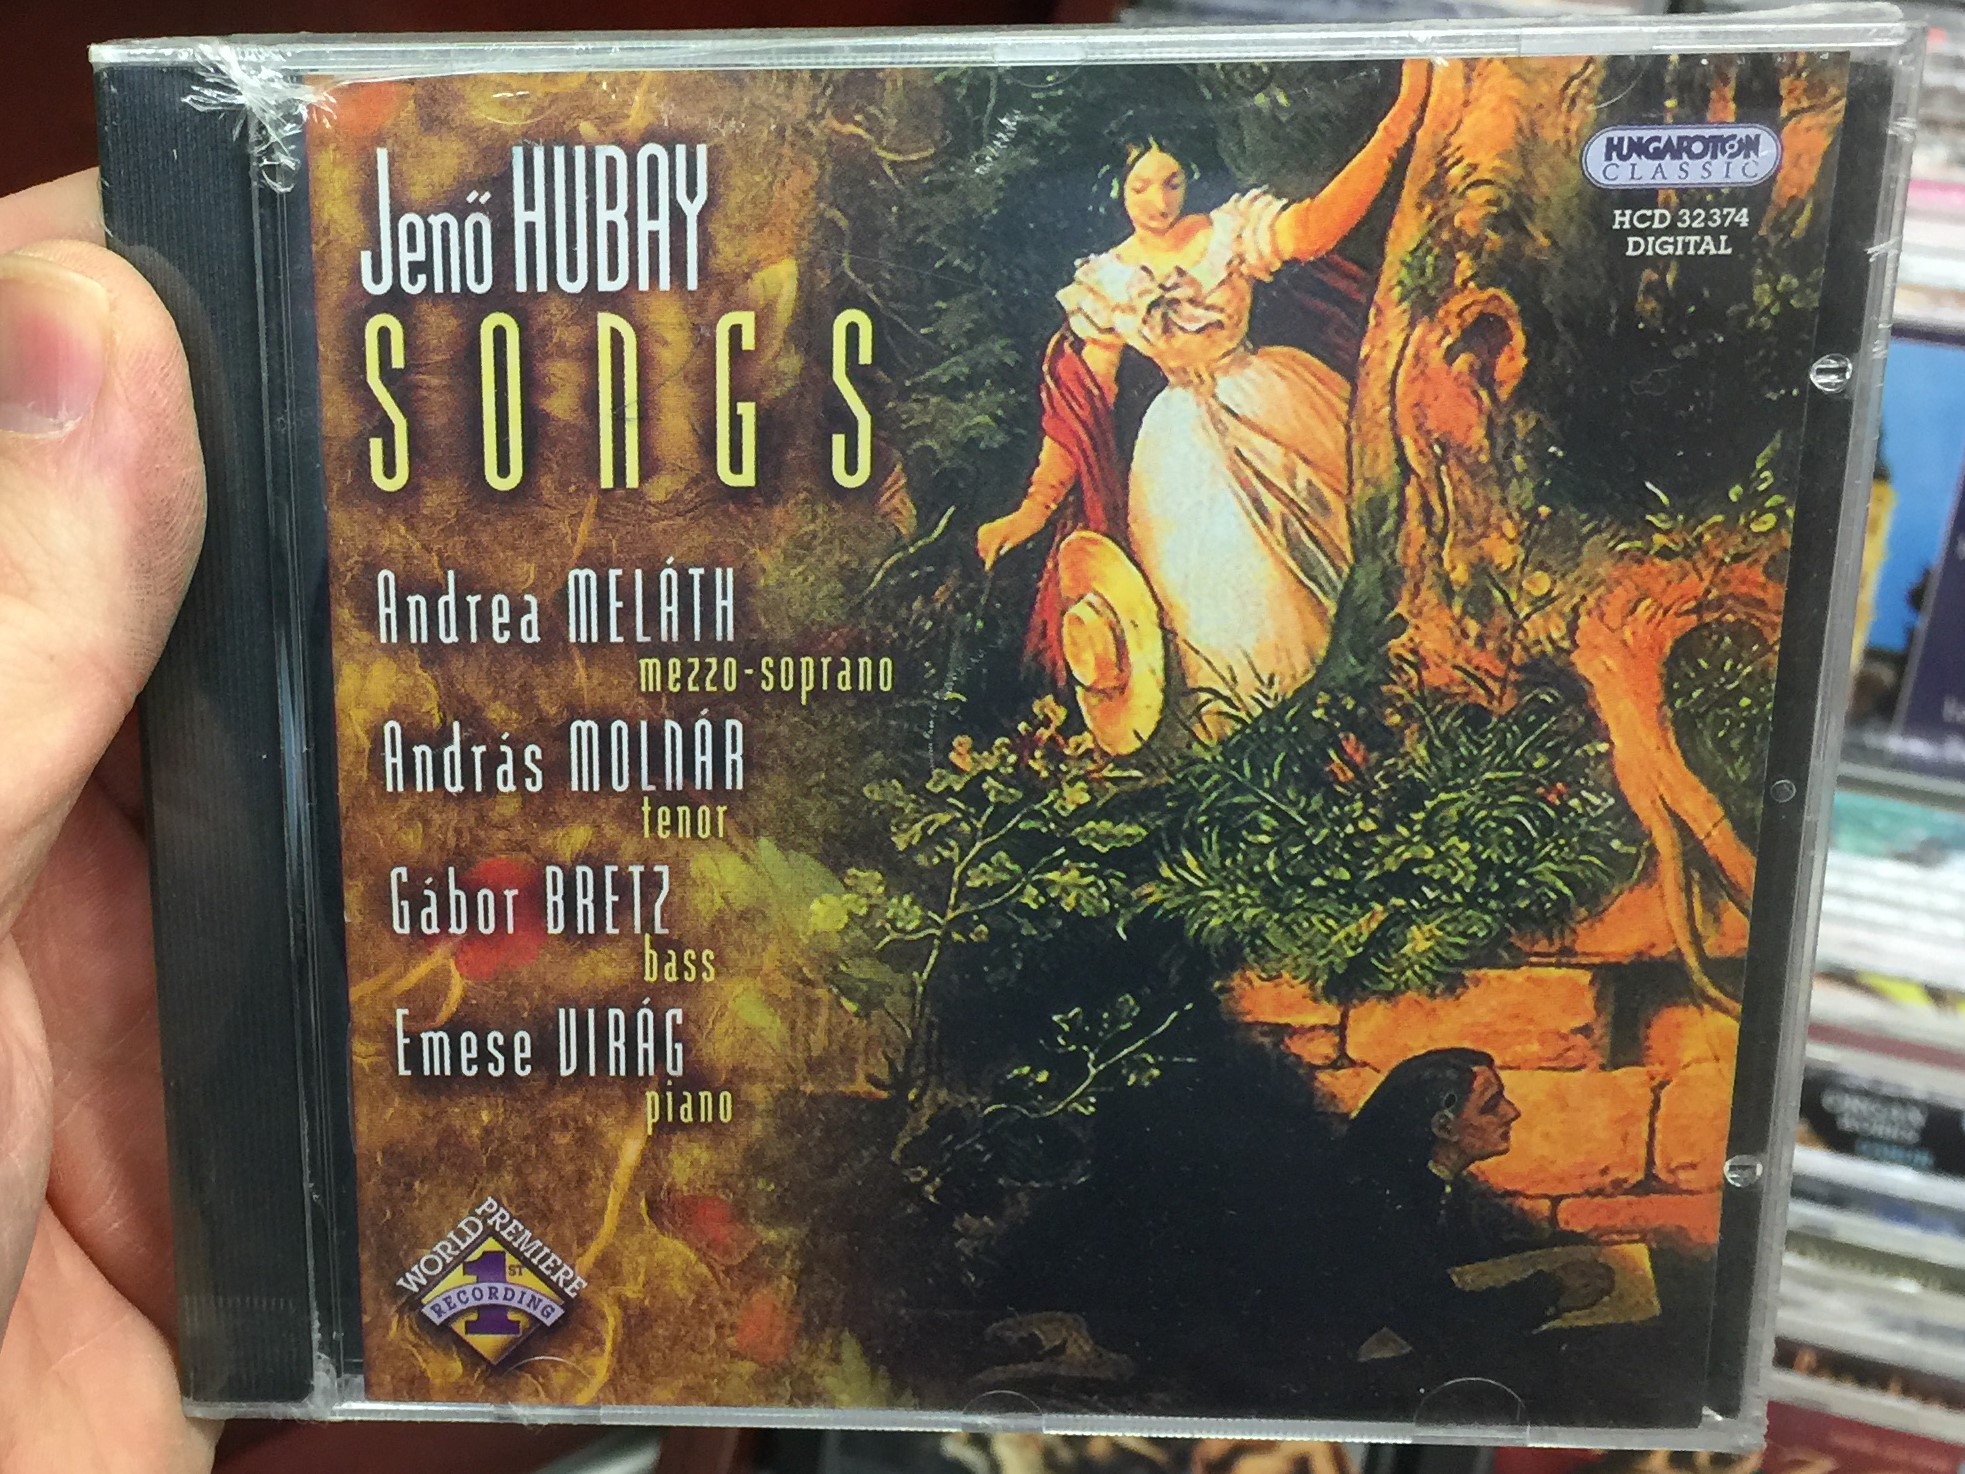 jeno-hubay-songs-andrea-melath-mezzo-soprano-andras-molnar-tenor-gabor-bretz-bass-emese-virag-piano-hungaroton-classic-audio-cd-2006-stereo-hcd-32374-1-.jpg